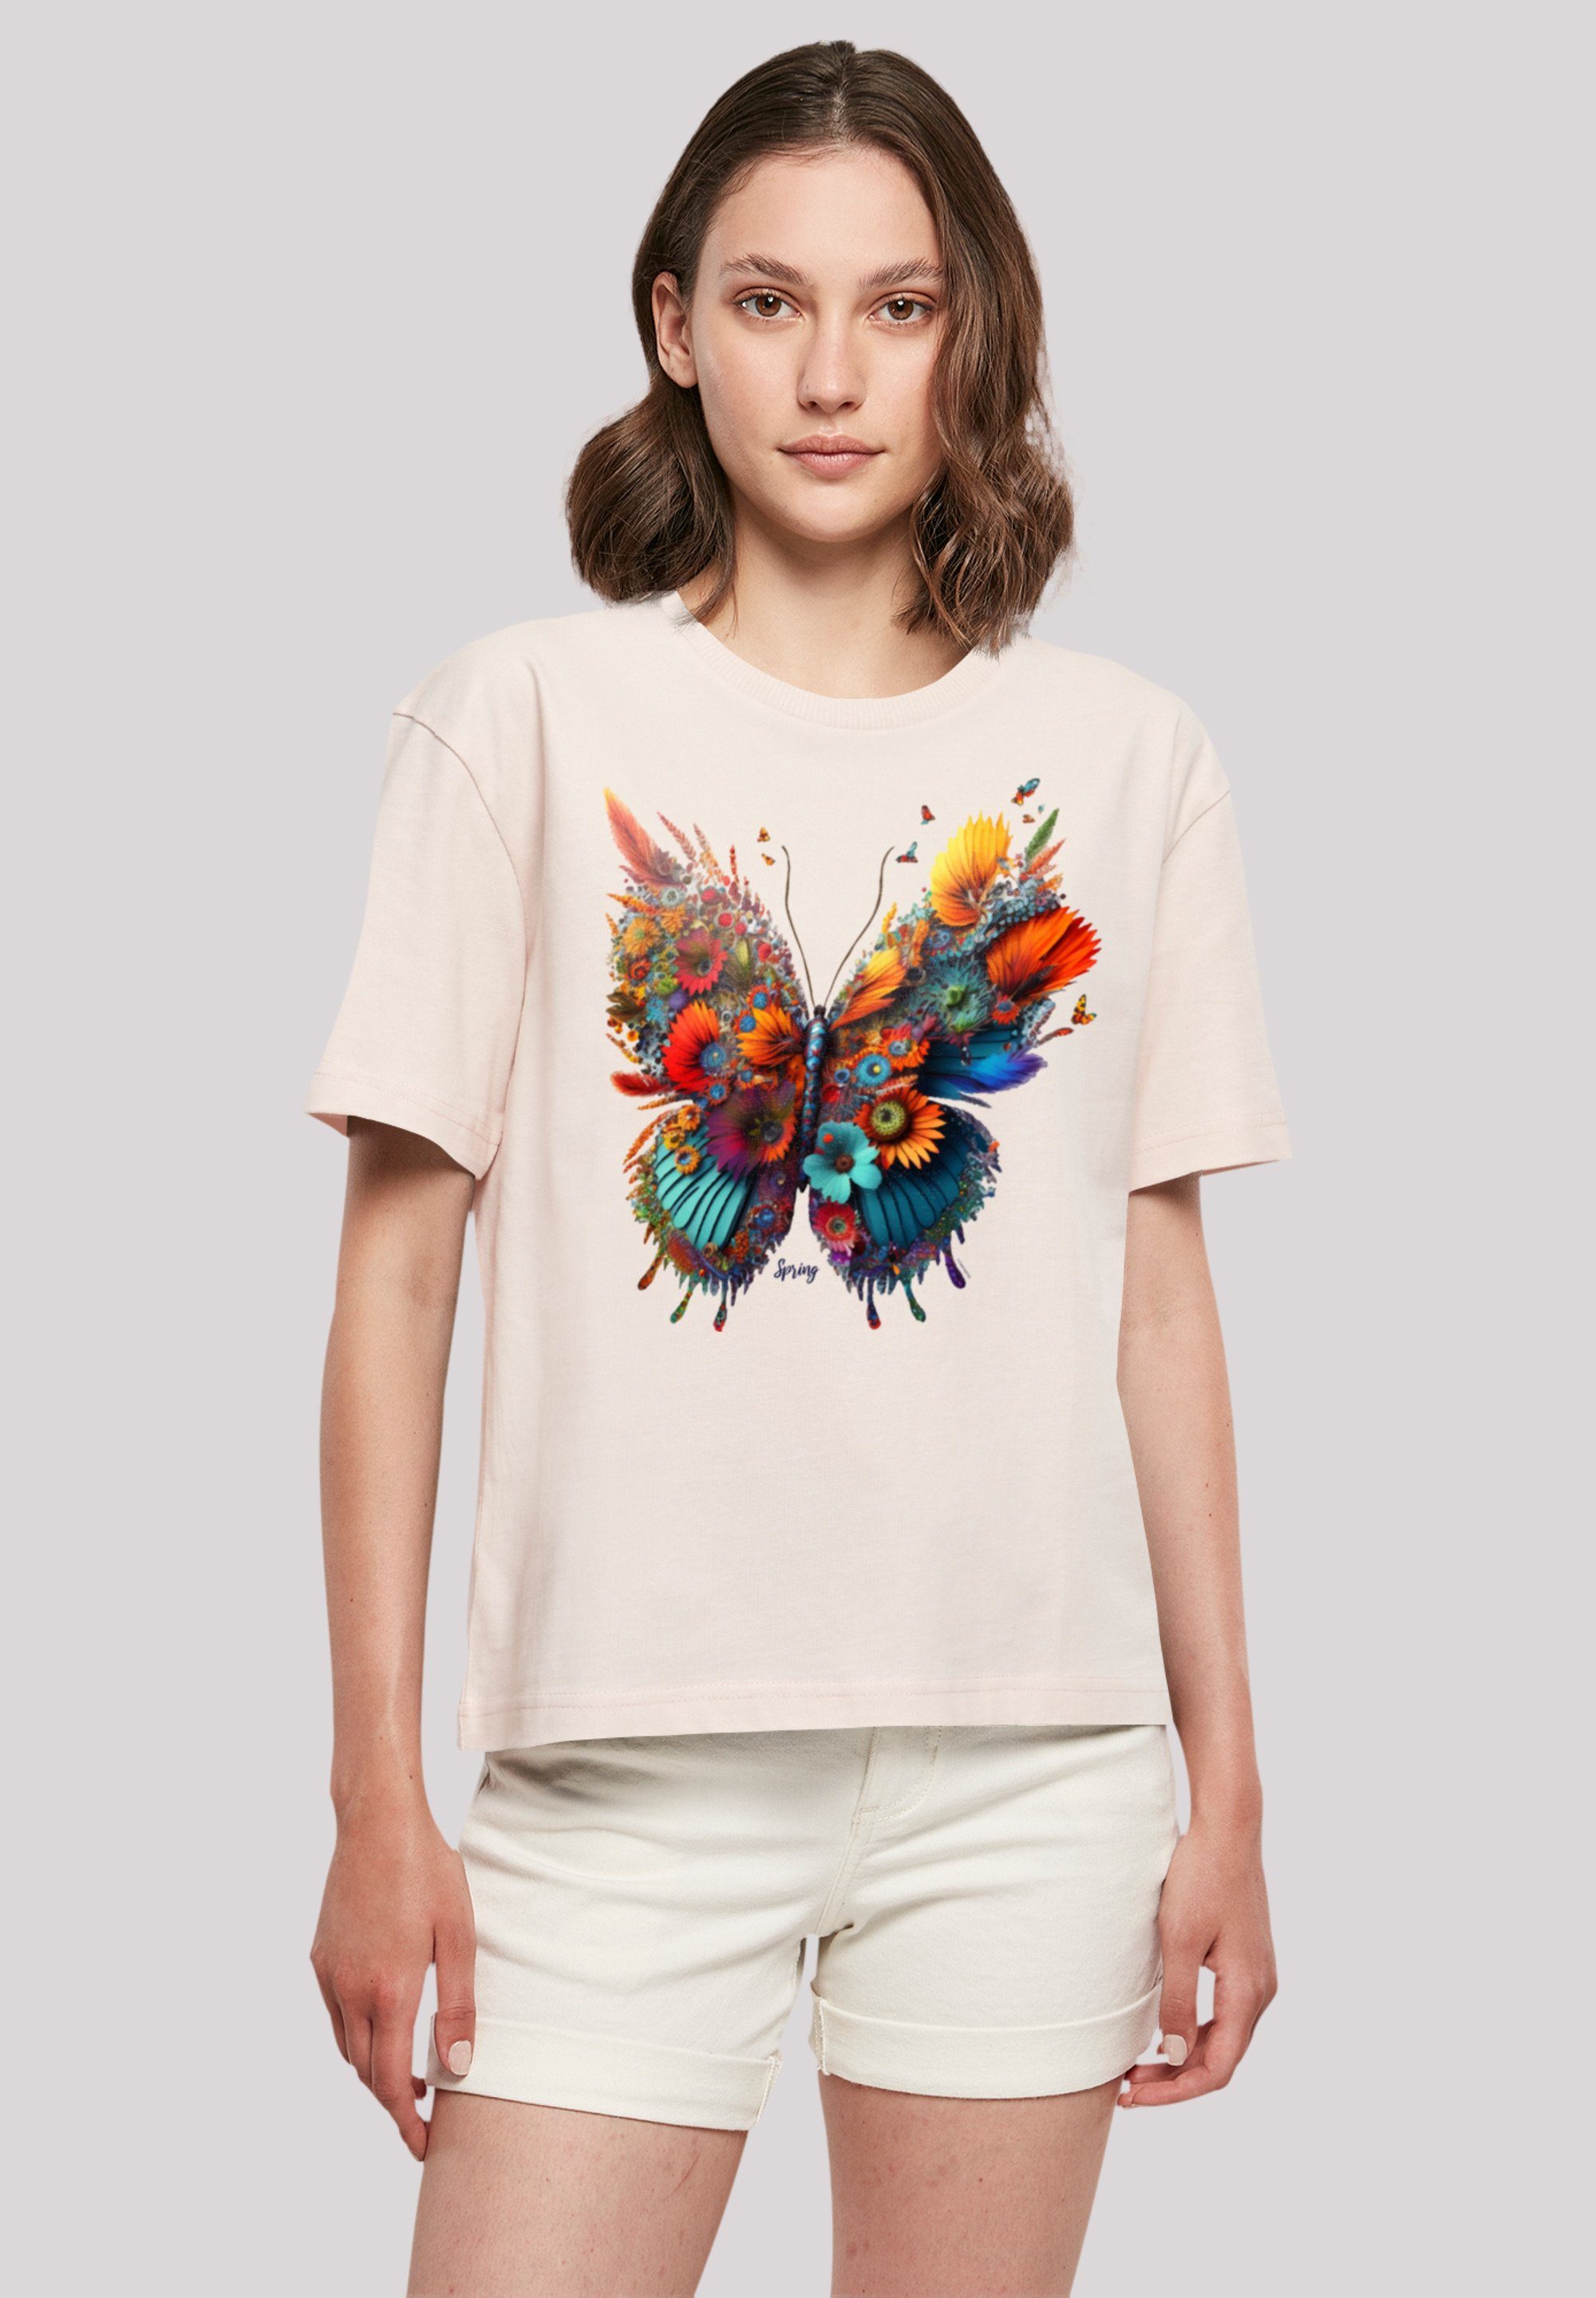 F4NT4STIC T-Shirt Schmetterling Blume eine Print, kleiner bitte Fällt bestellen Größe aus, weit